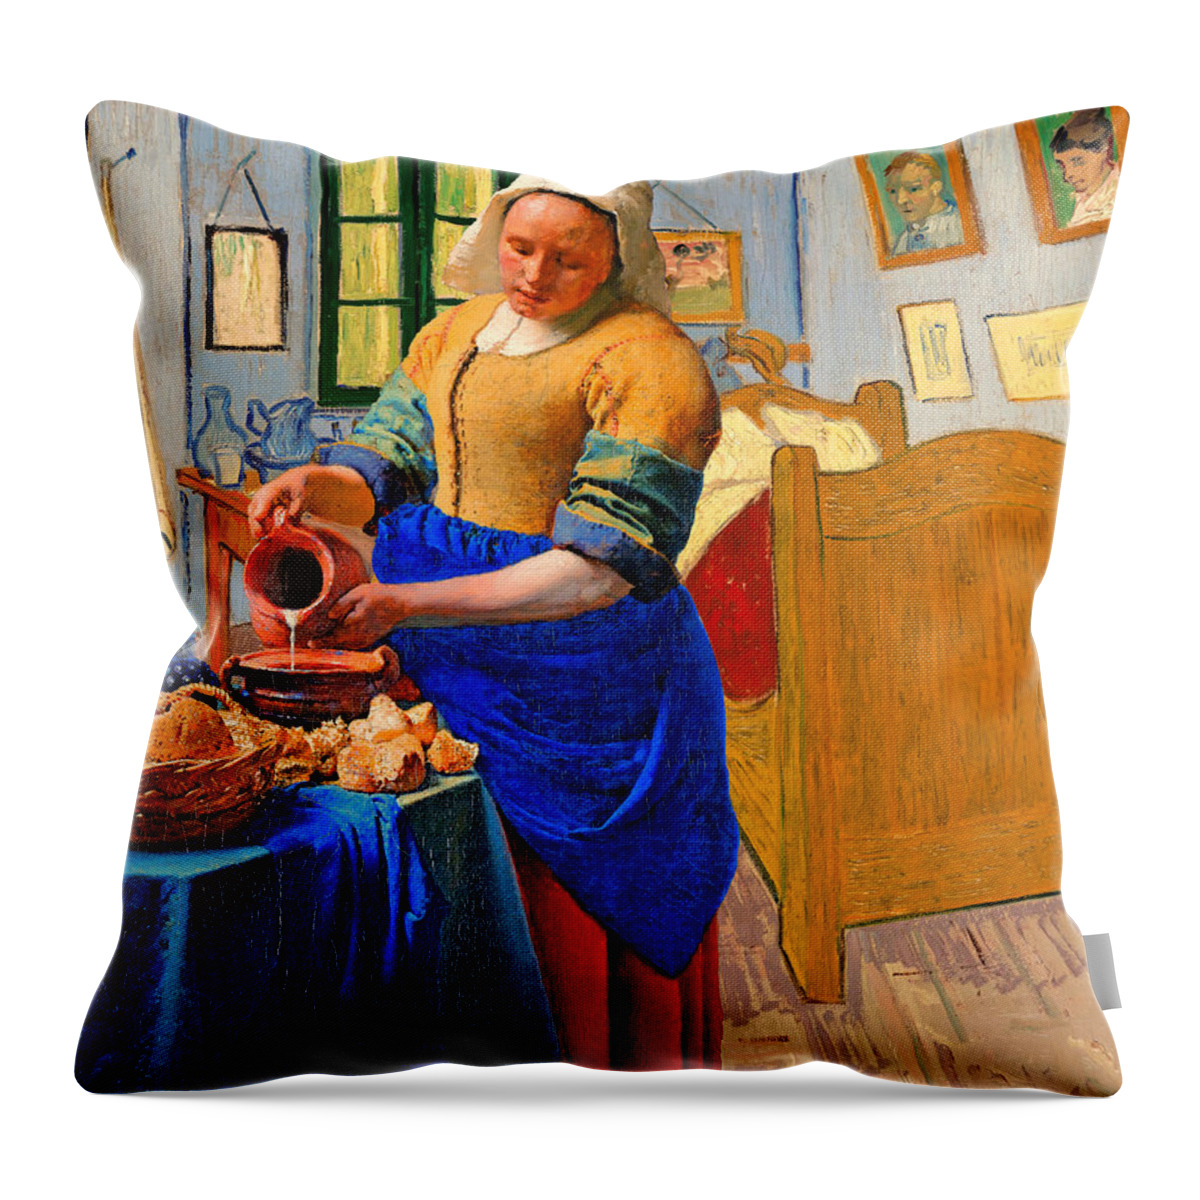 Milkmaid Throw Pillow featuring the digital art The Milkmaid by Johannes Vermeer inside Van Goghs Bedroom in Arles by Nicko Prints